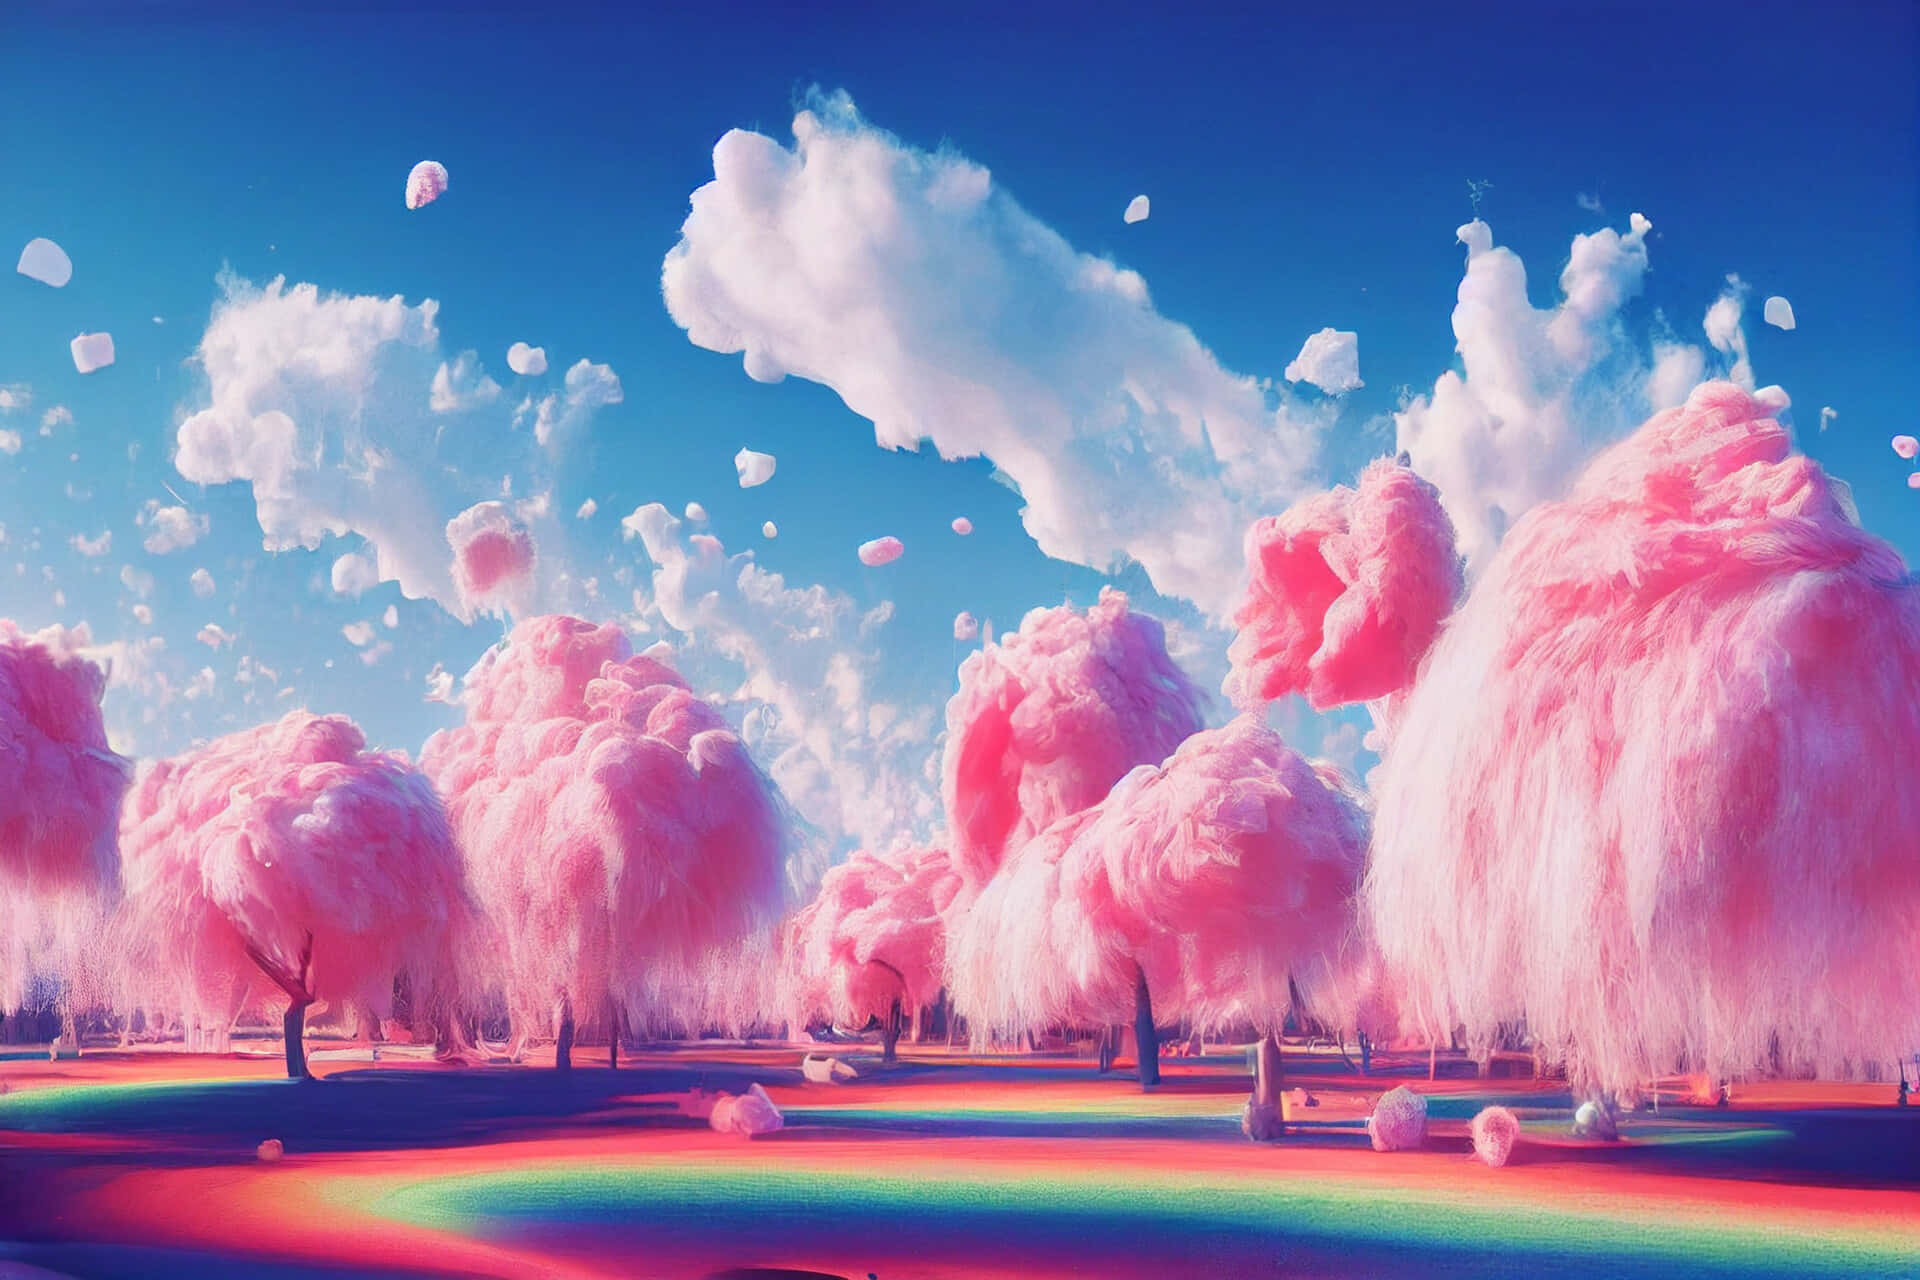 Hình nền Mây thẩm mỹ Trippy độc đáo tuyệt đẹp là nguồn cảm hứng lý tưởng cho những người yêu thích nghệ thuật và sự độc đáo. Với hơn 100 hình ảnh Trippy sáng tạo, bạn sẽ không thể rời mắt khỏi chúng. Những hình nền này sẽ mang đến cho máy tính của bạn một vẻ đẹp khoảng không tuyệt vời.